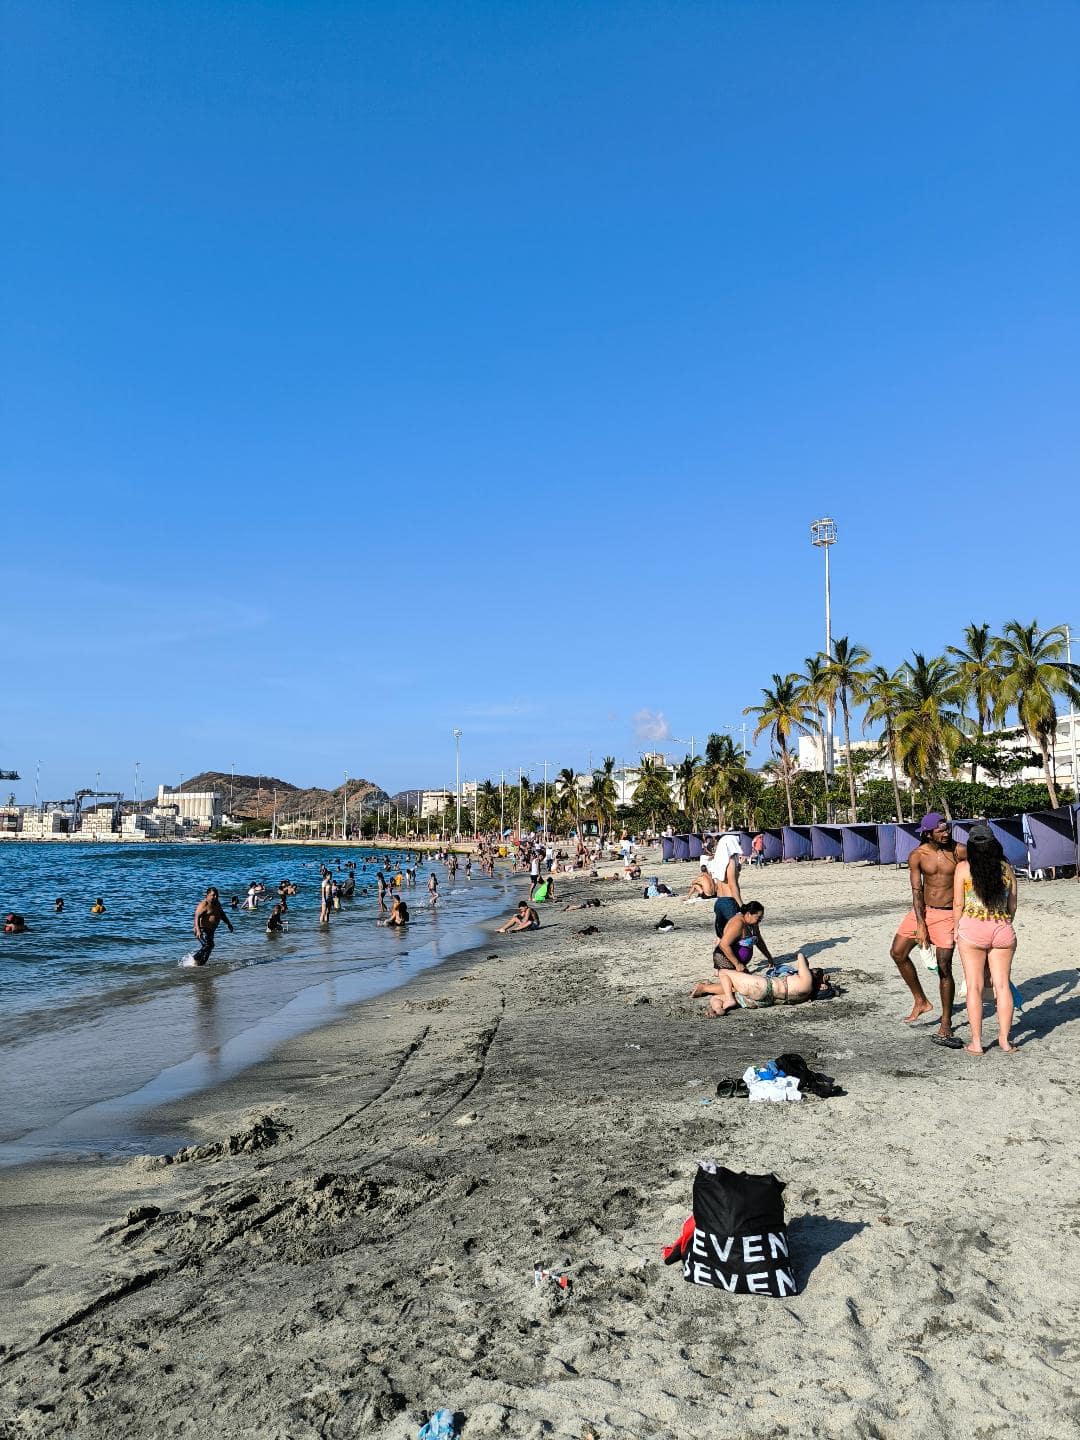 Pláž, more, palmy a relaxujúci turisti.